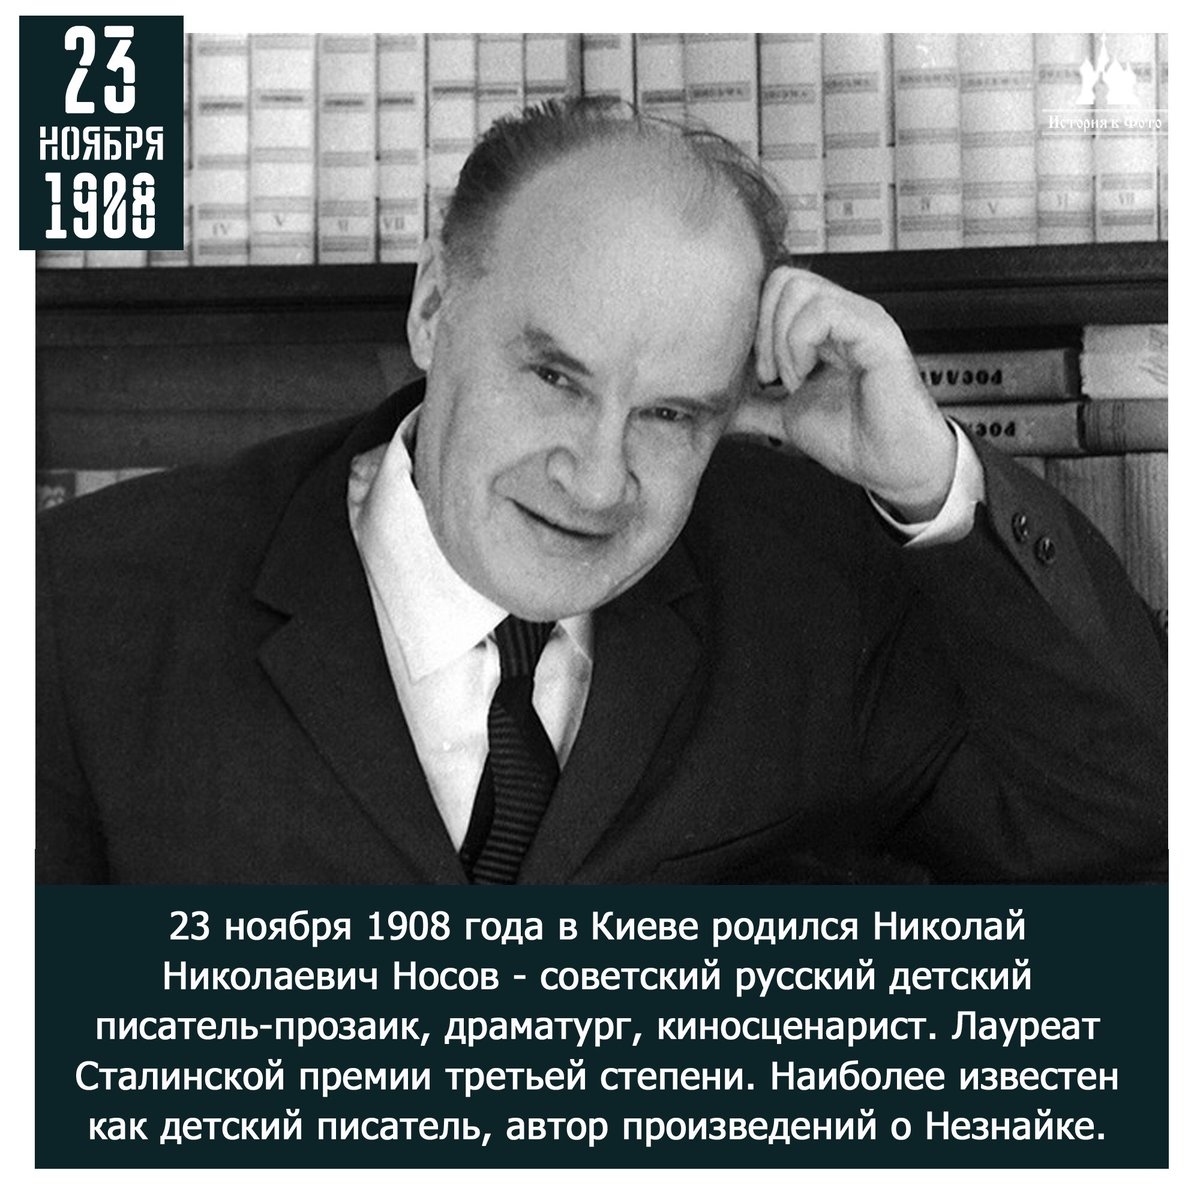 Николай Николаевич Носов (1908 - 26.07.1976)